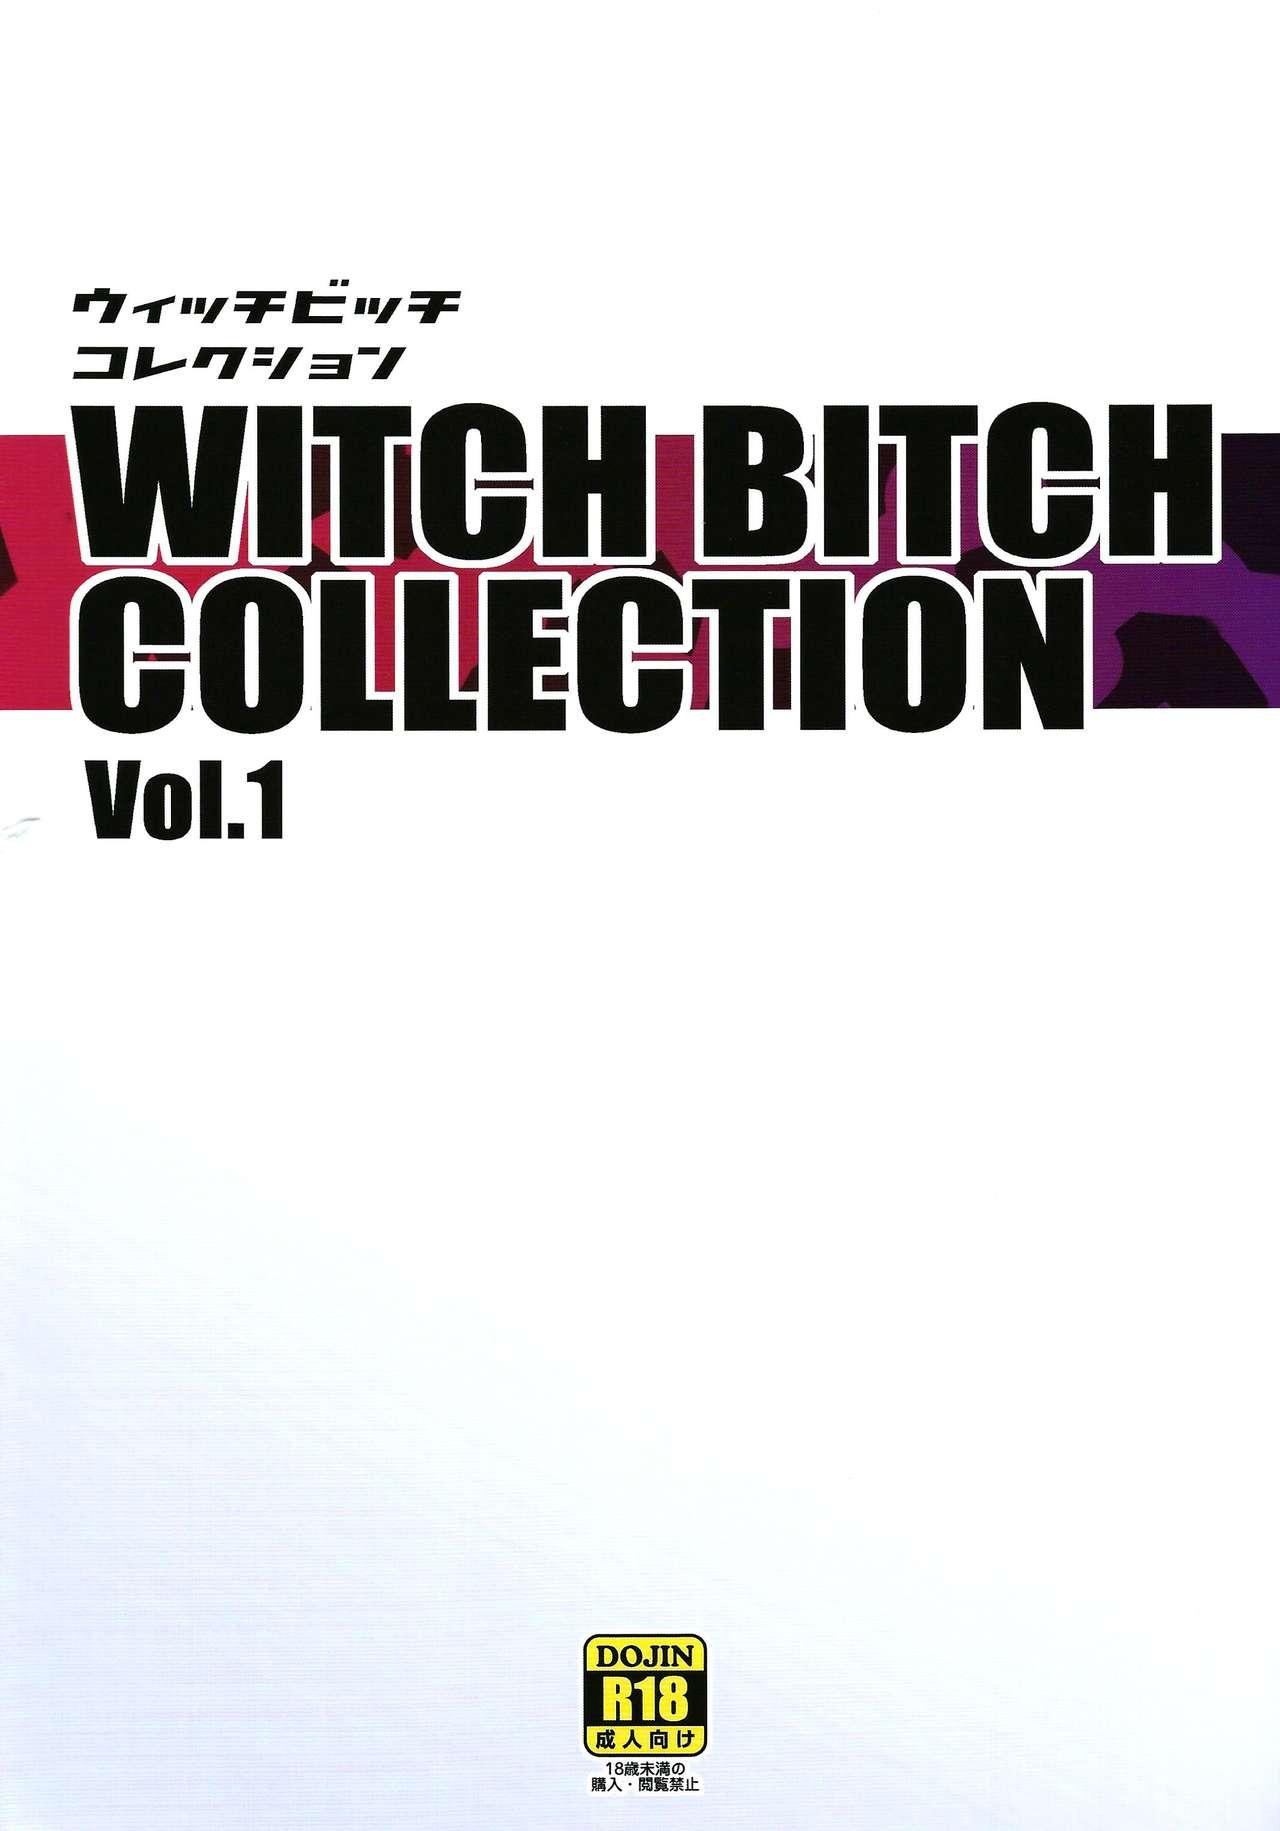 Chichikko Bitch 2 - Witch Bitch Collection Vol.1 VERSION 25